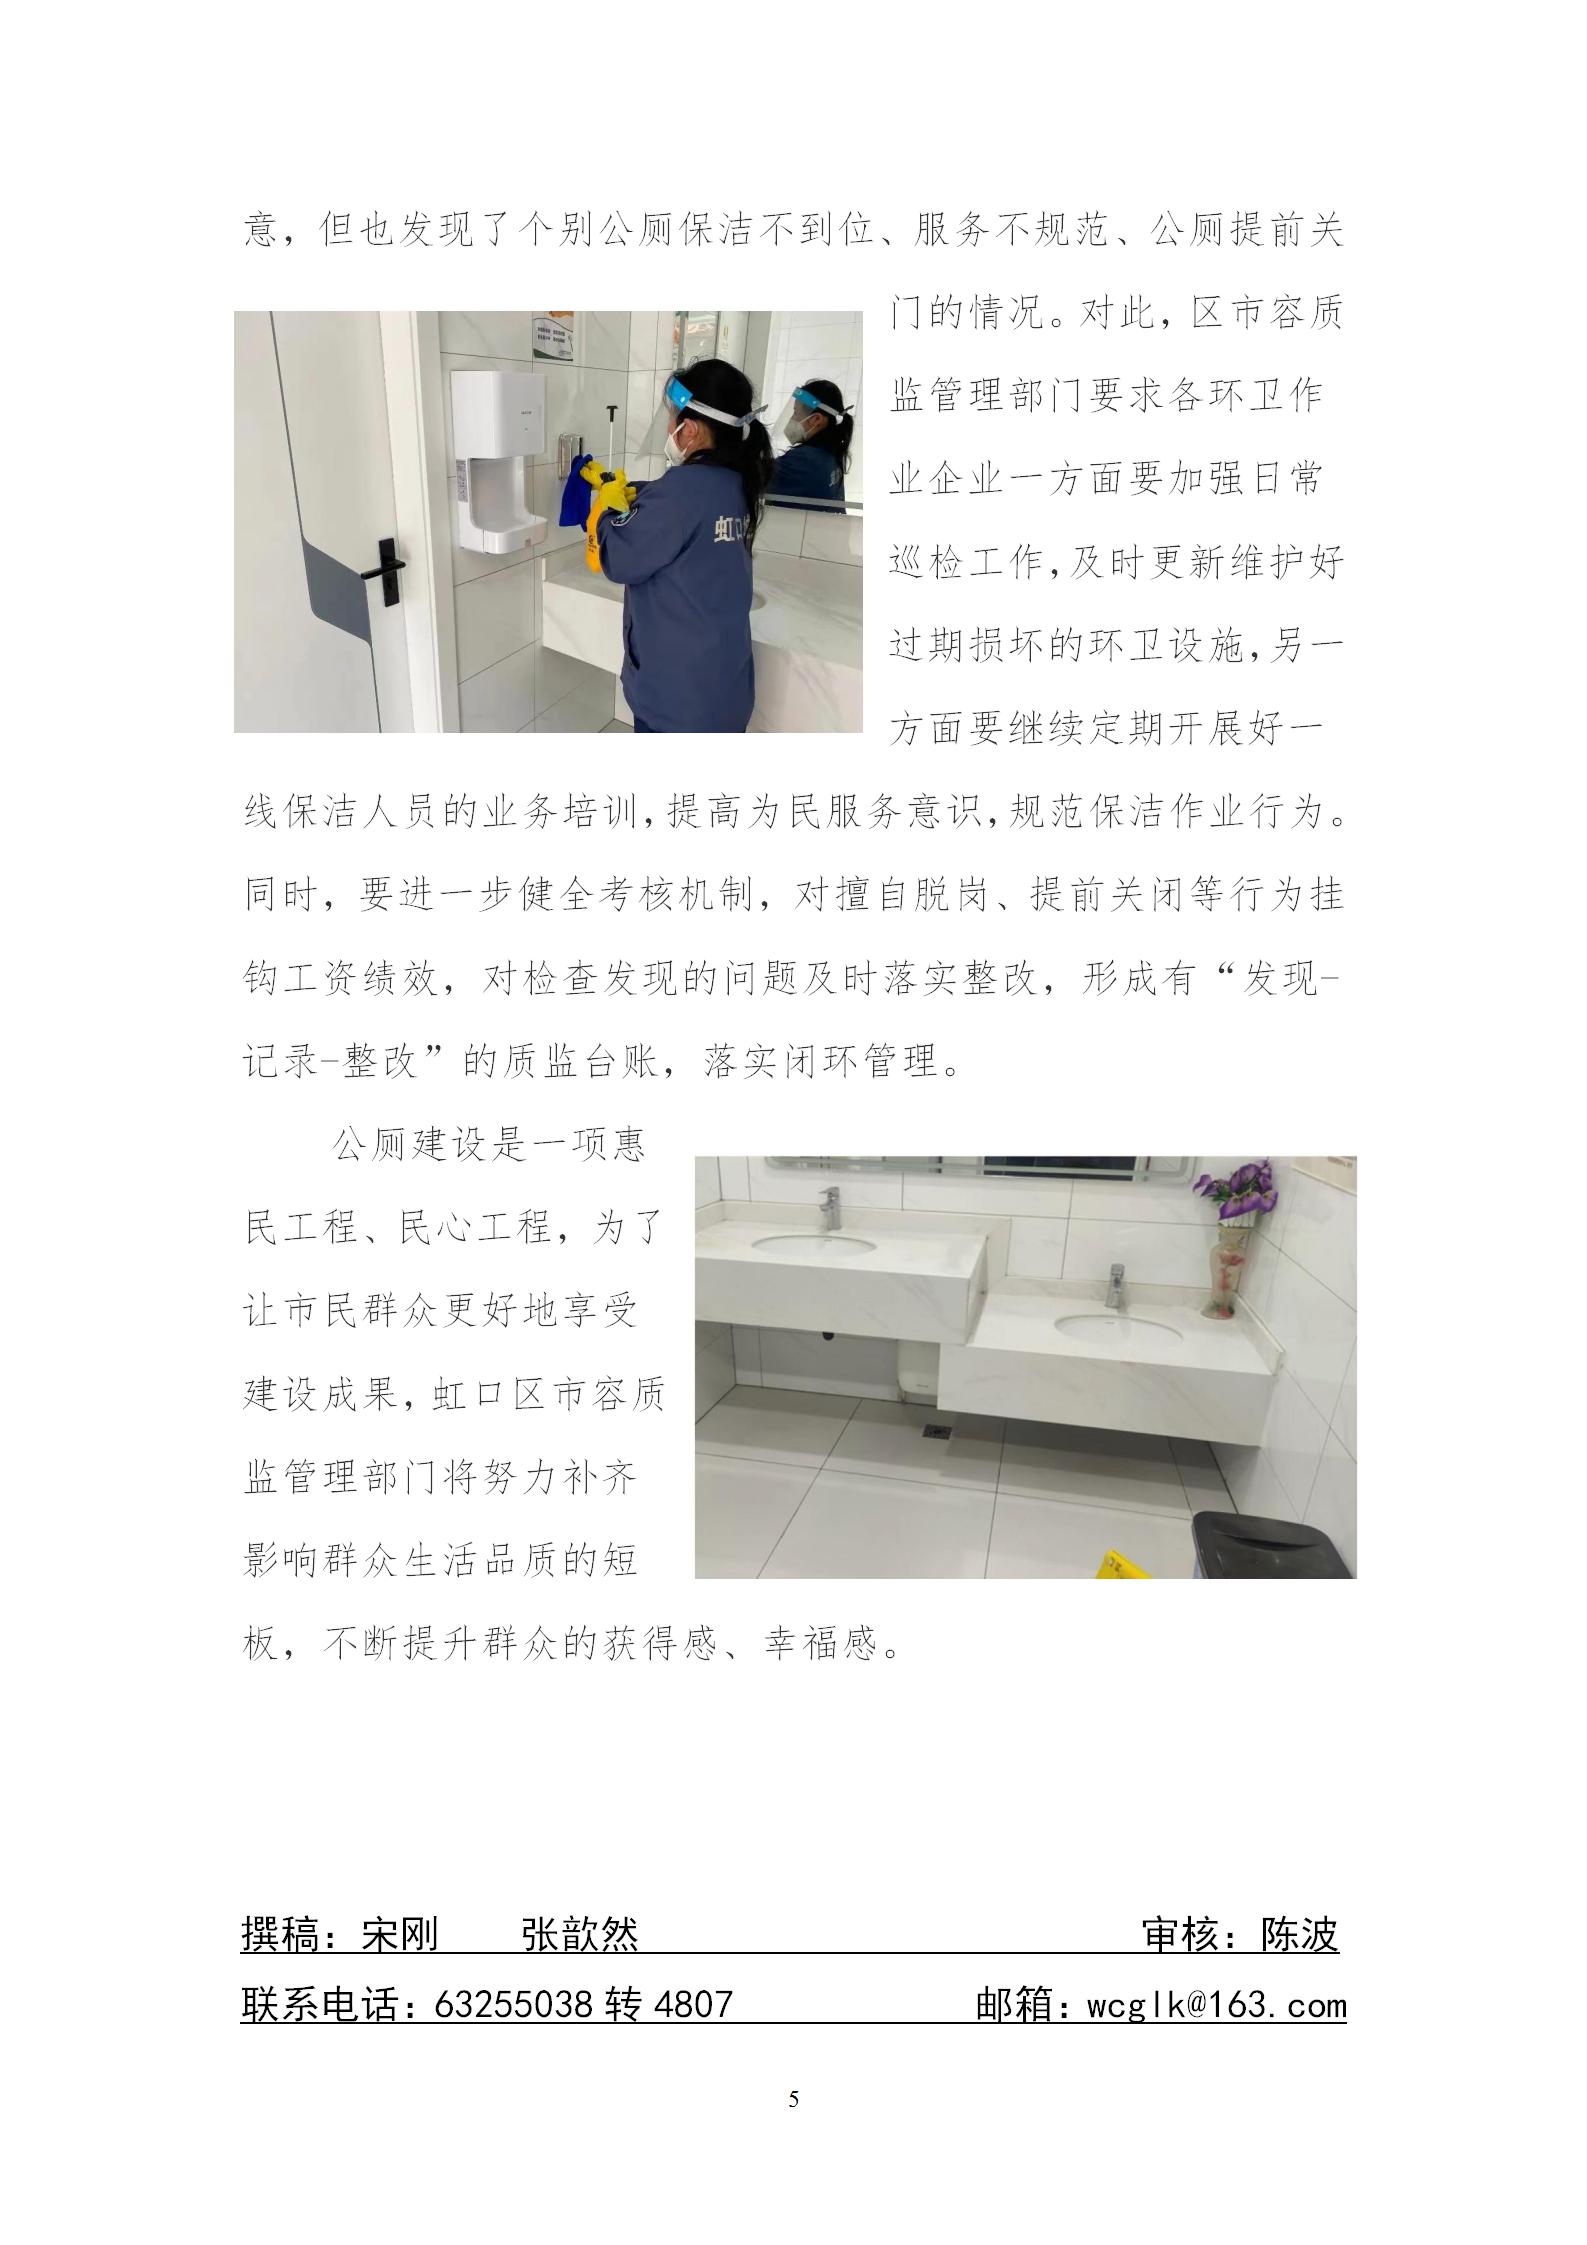 公厕行业文明创建工作月刊202303_05.jpg